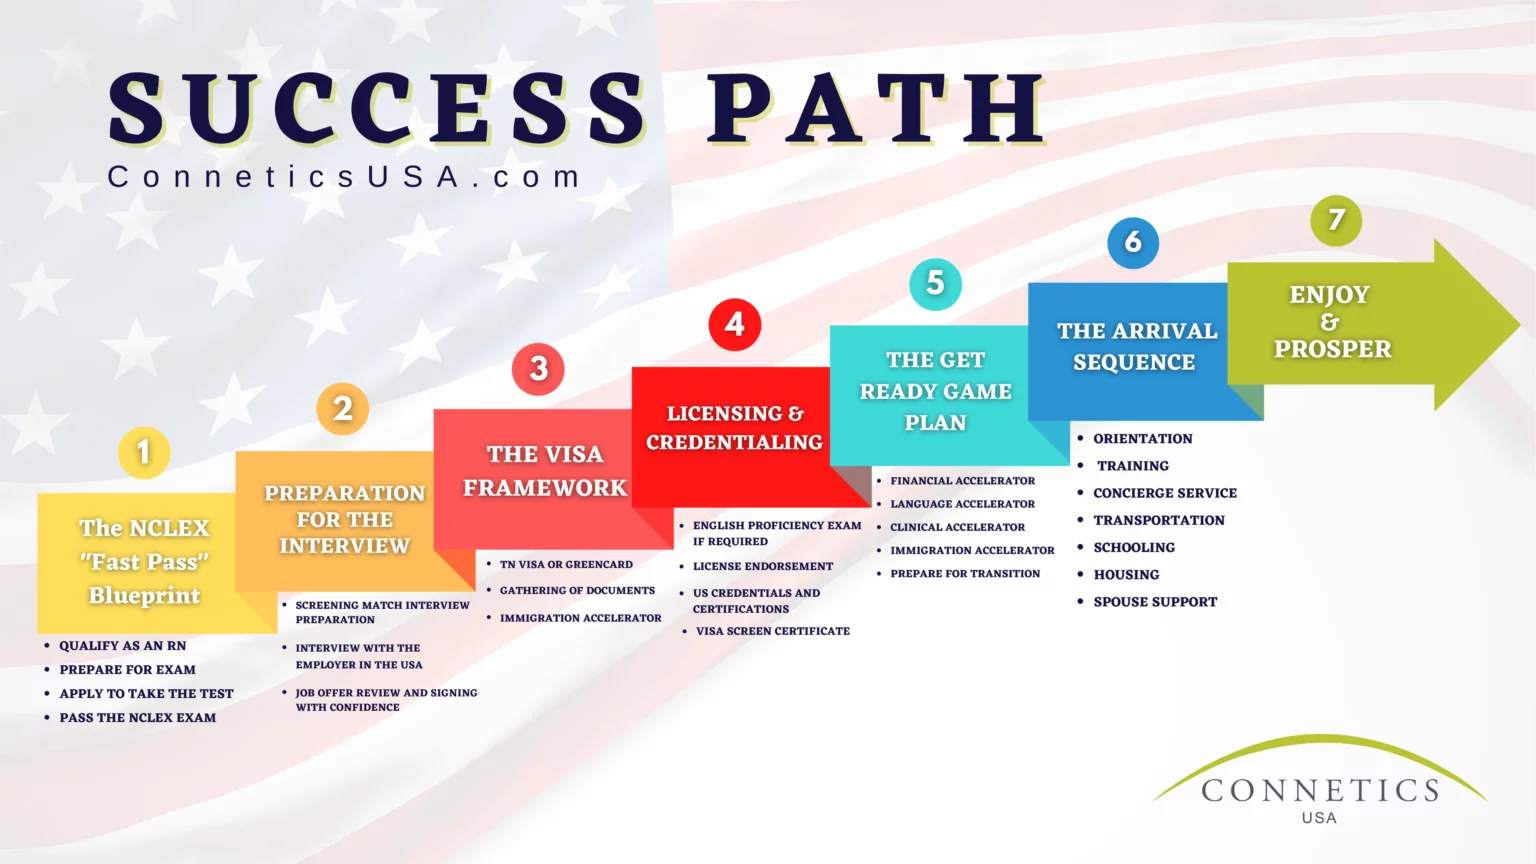 Connetics-USA-Success-path-1536x864.png.webp